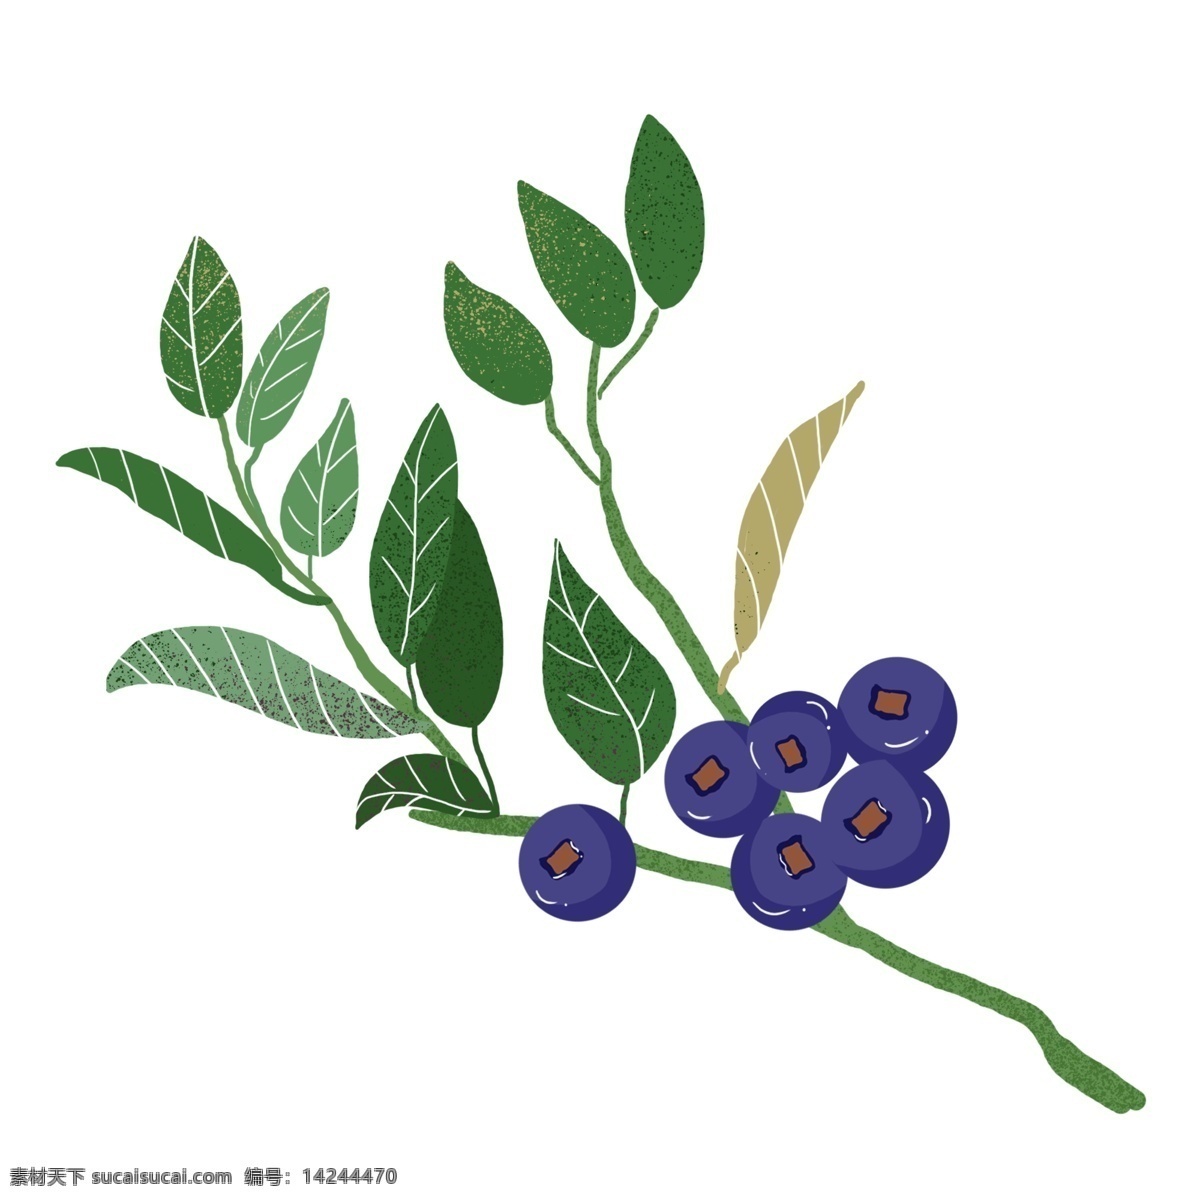 矢量 水果 蓝莓 元素 夏季水果 夏季食品 手绘蓝莓 水果蓝莓 矢量蓝莓 卡通蓝莓 蓝莓水果 卡通蓝莓水果